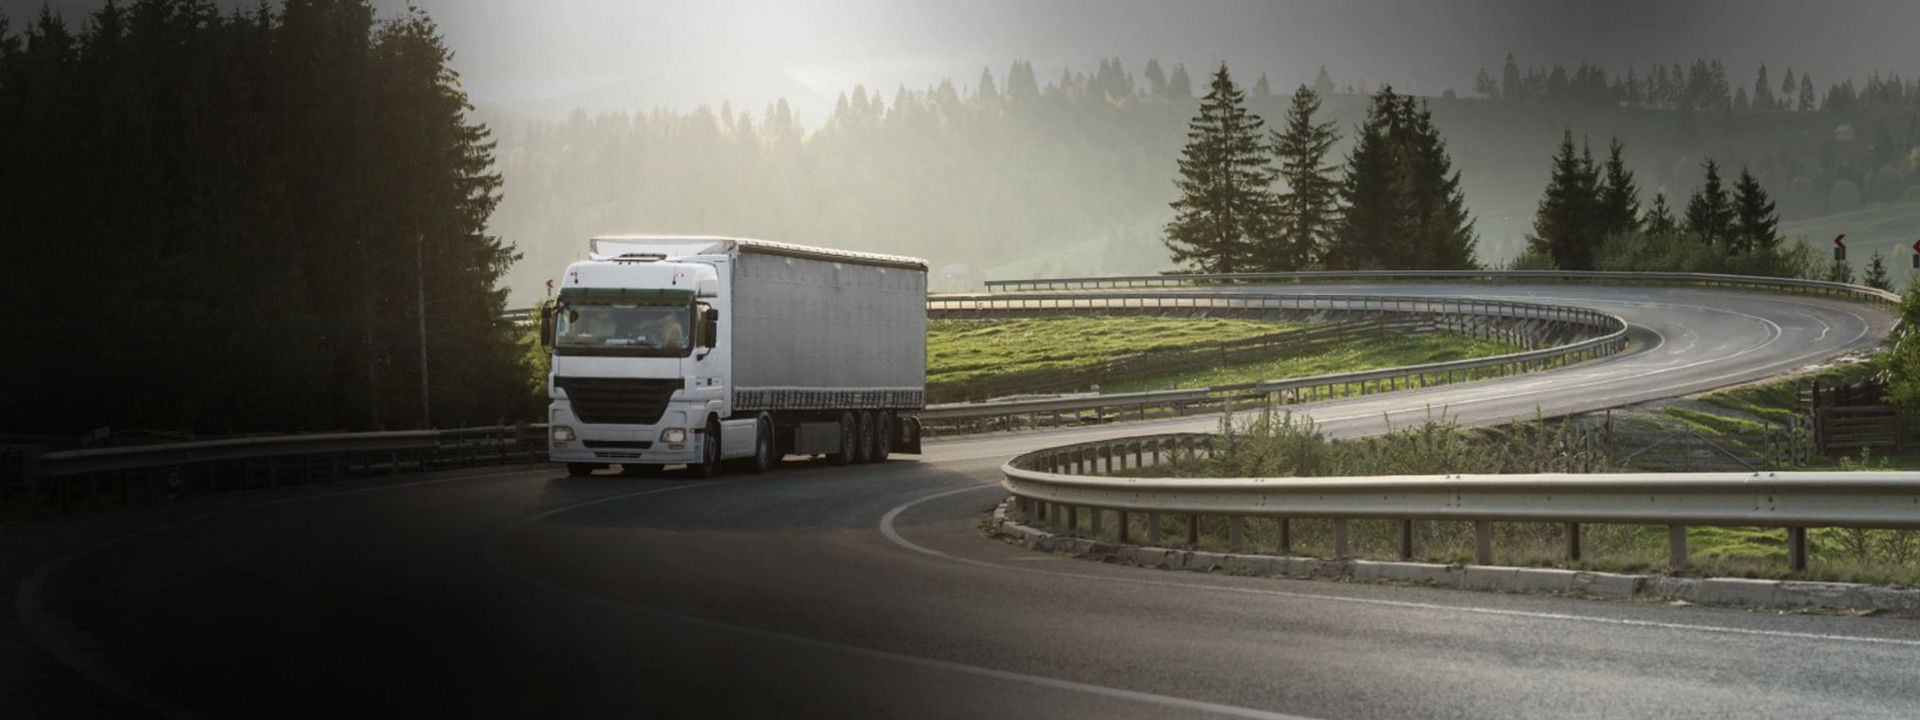 Esta imagen muestra un camión de largo recorrido conduciendo por una carretera regional con neumáticos de camión versátiles Bridgestone.